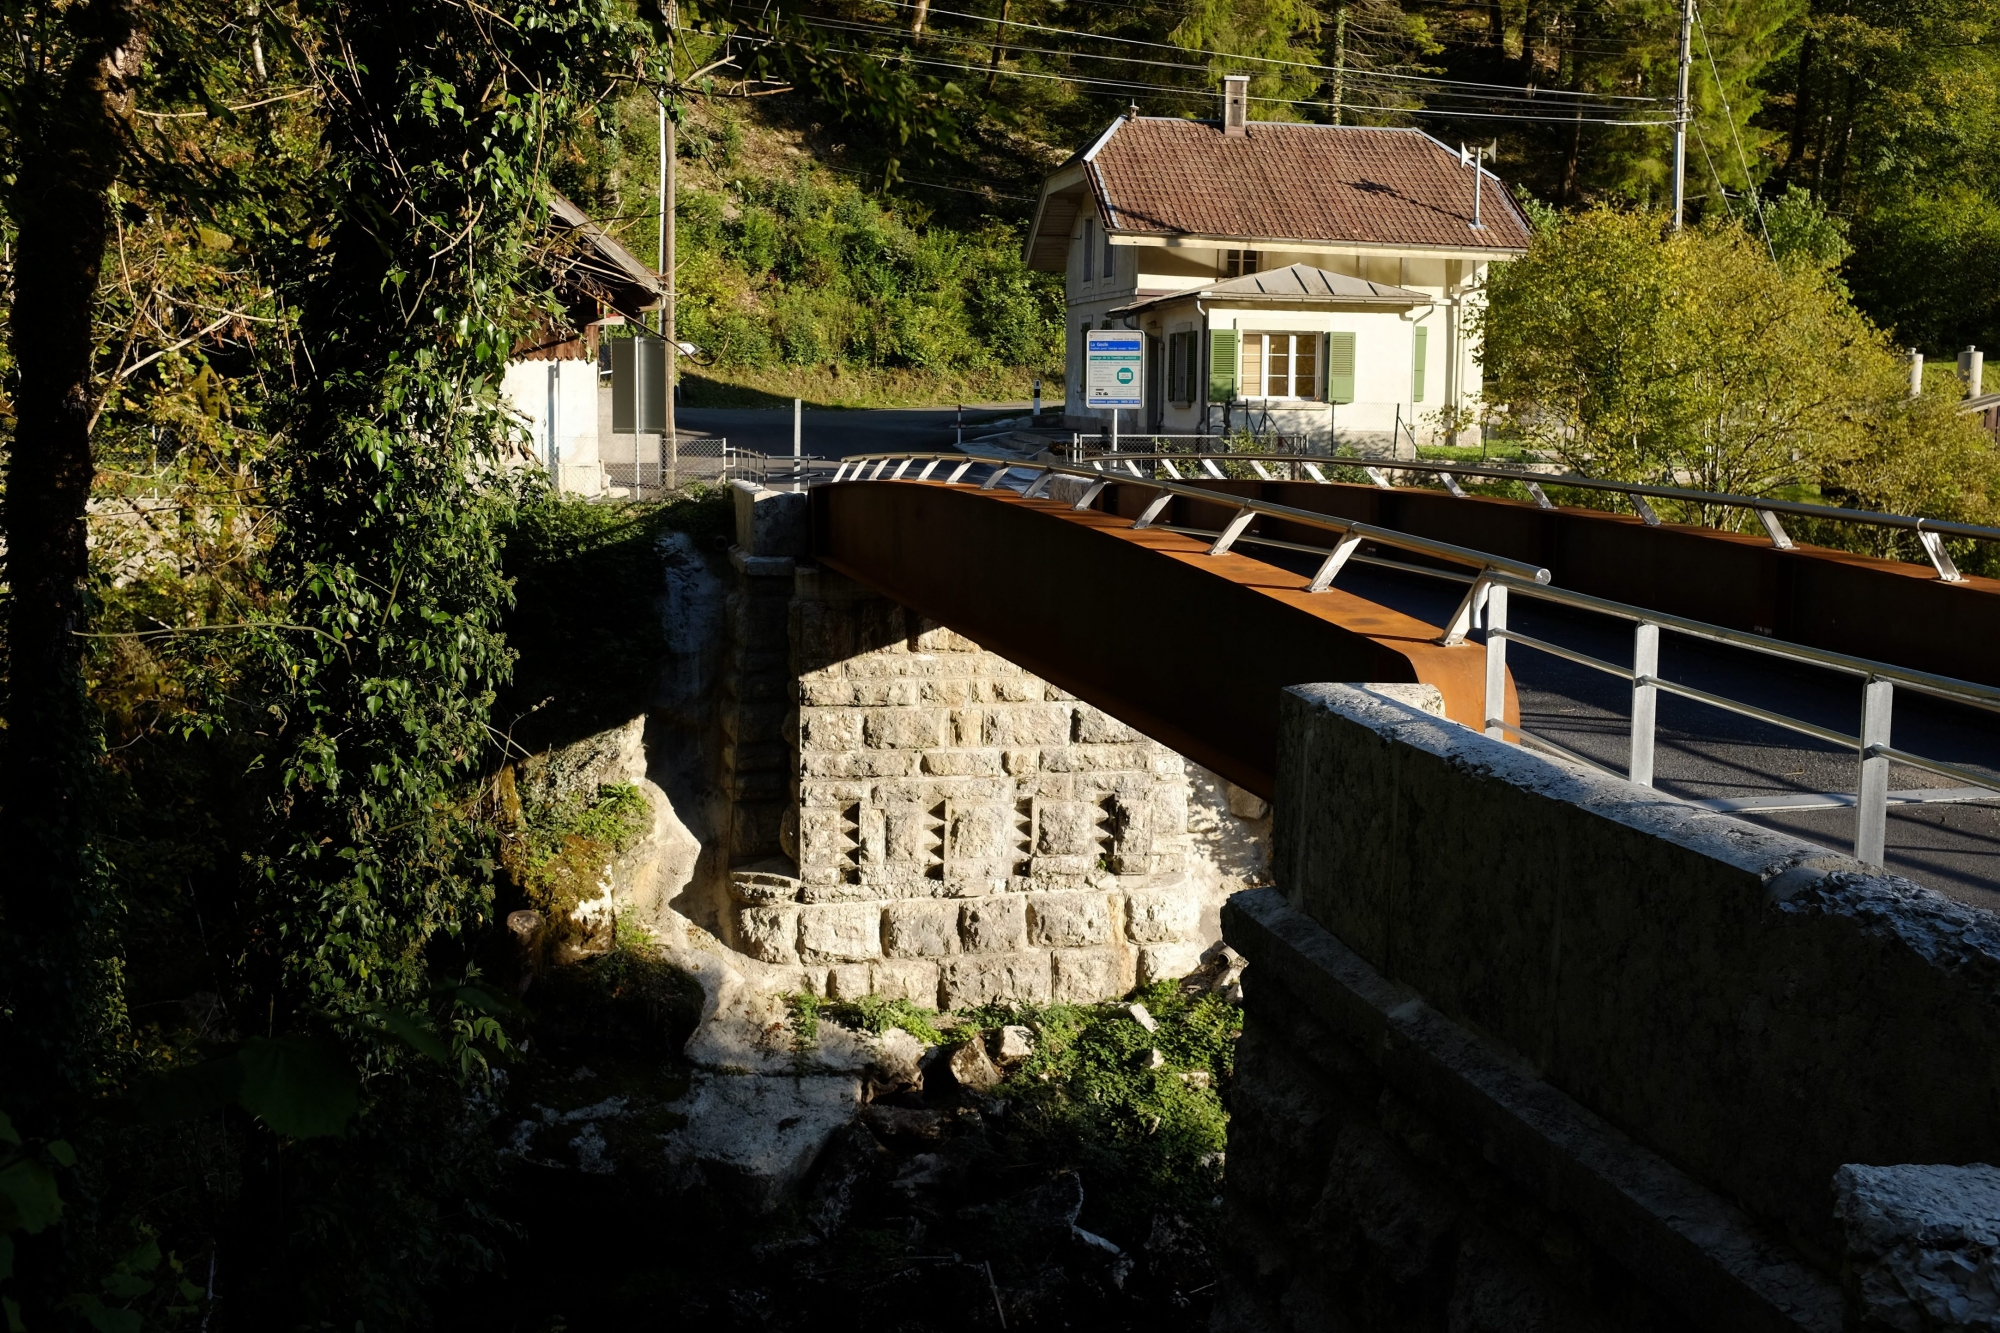 Le Doubs et le Pont de La Goule

LE NOIRMONT 28 09 2015
Photo: Christian Galley DOUBS